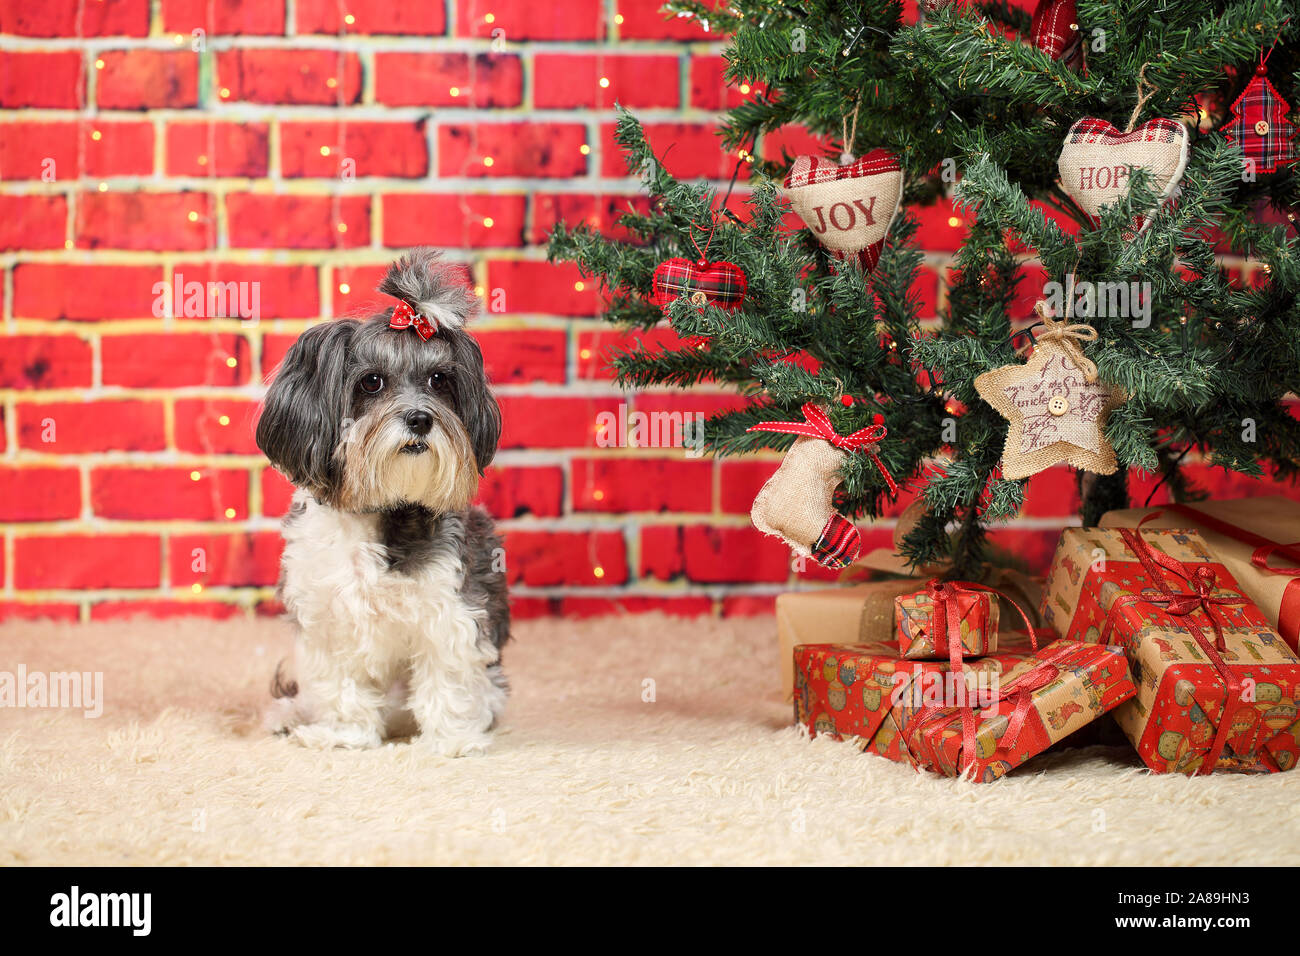 Bichon Havanais chien mignon avec ruban rouge assis sur un tapis près d'un arbre de Noël avec des cadeaux. Briques rouges décoratifs avec arrière-plan Lumières floues Banque D'Images